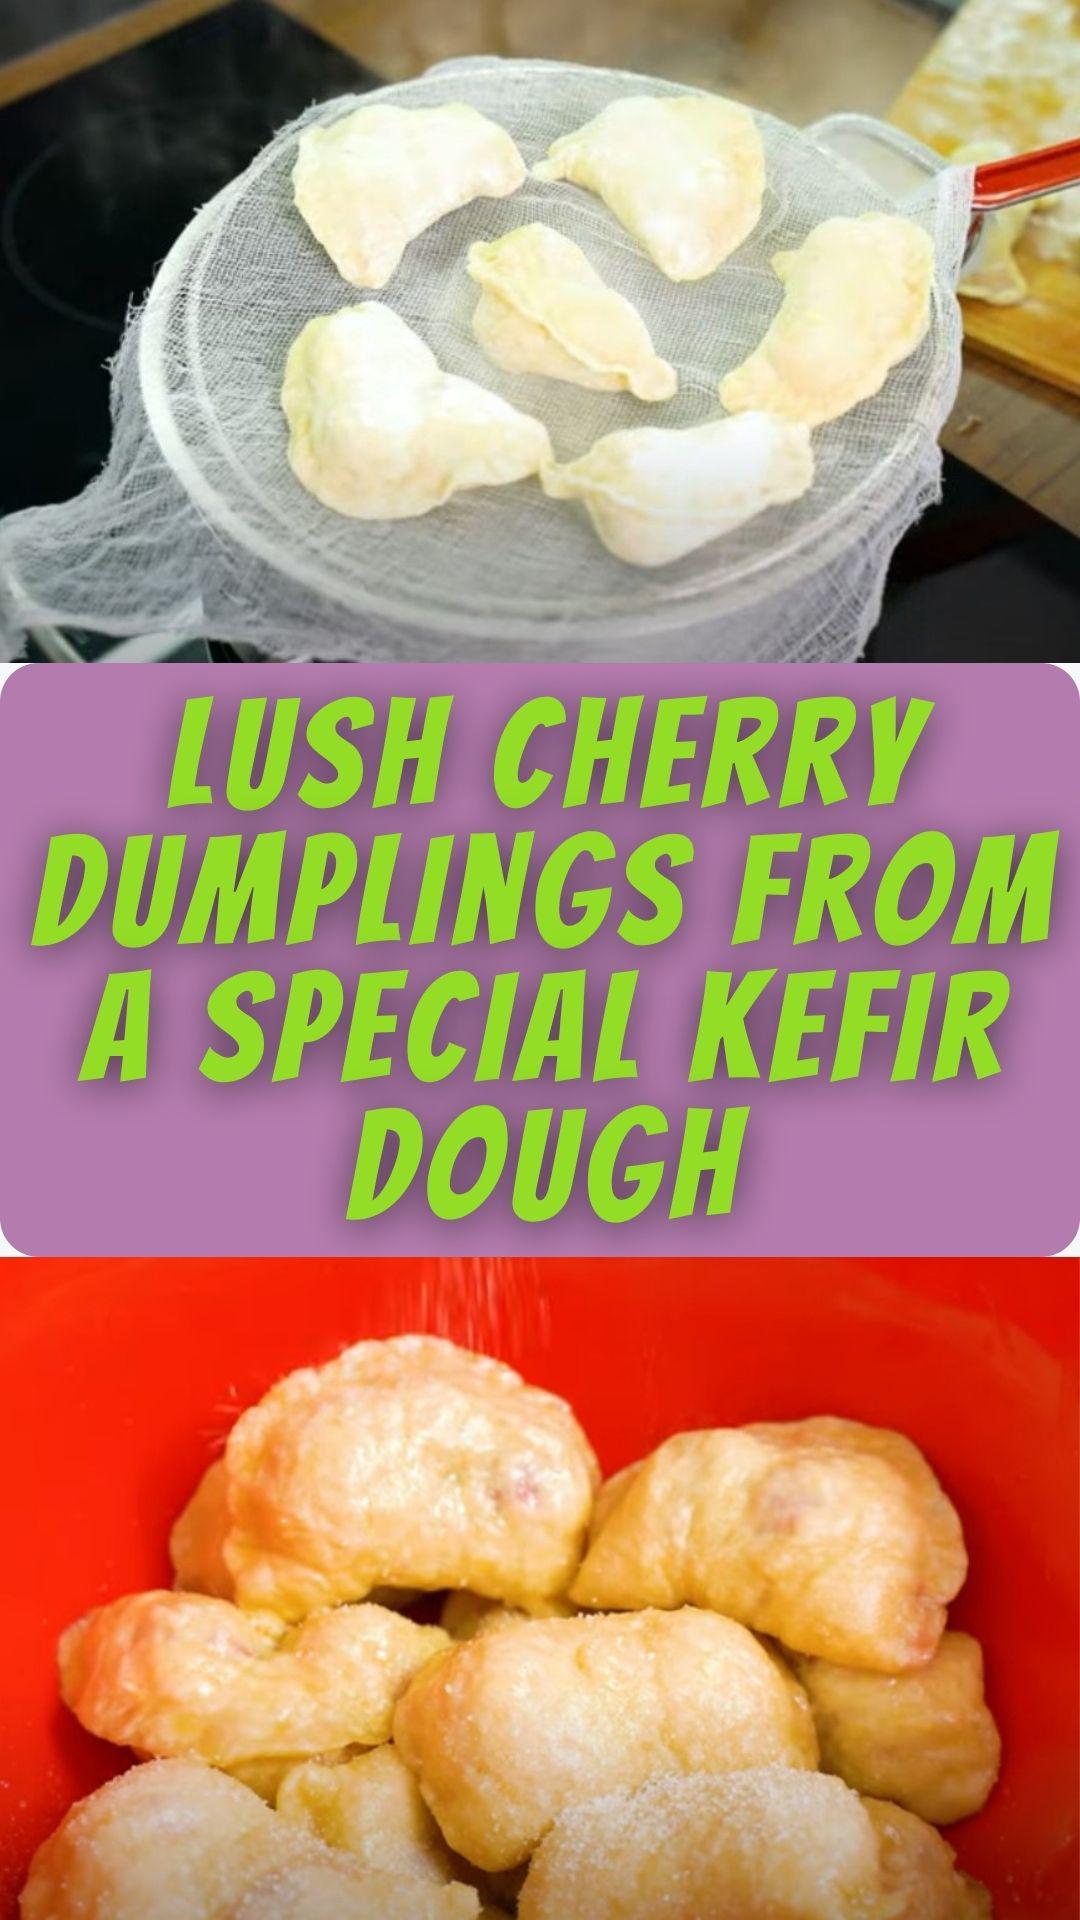 Lush cherry dumplings from a special kefir dough